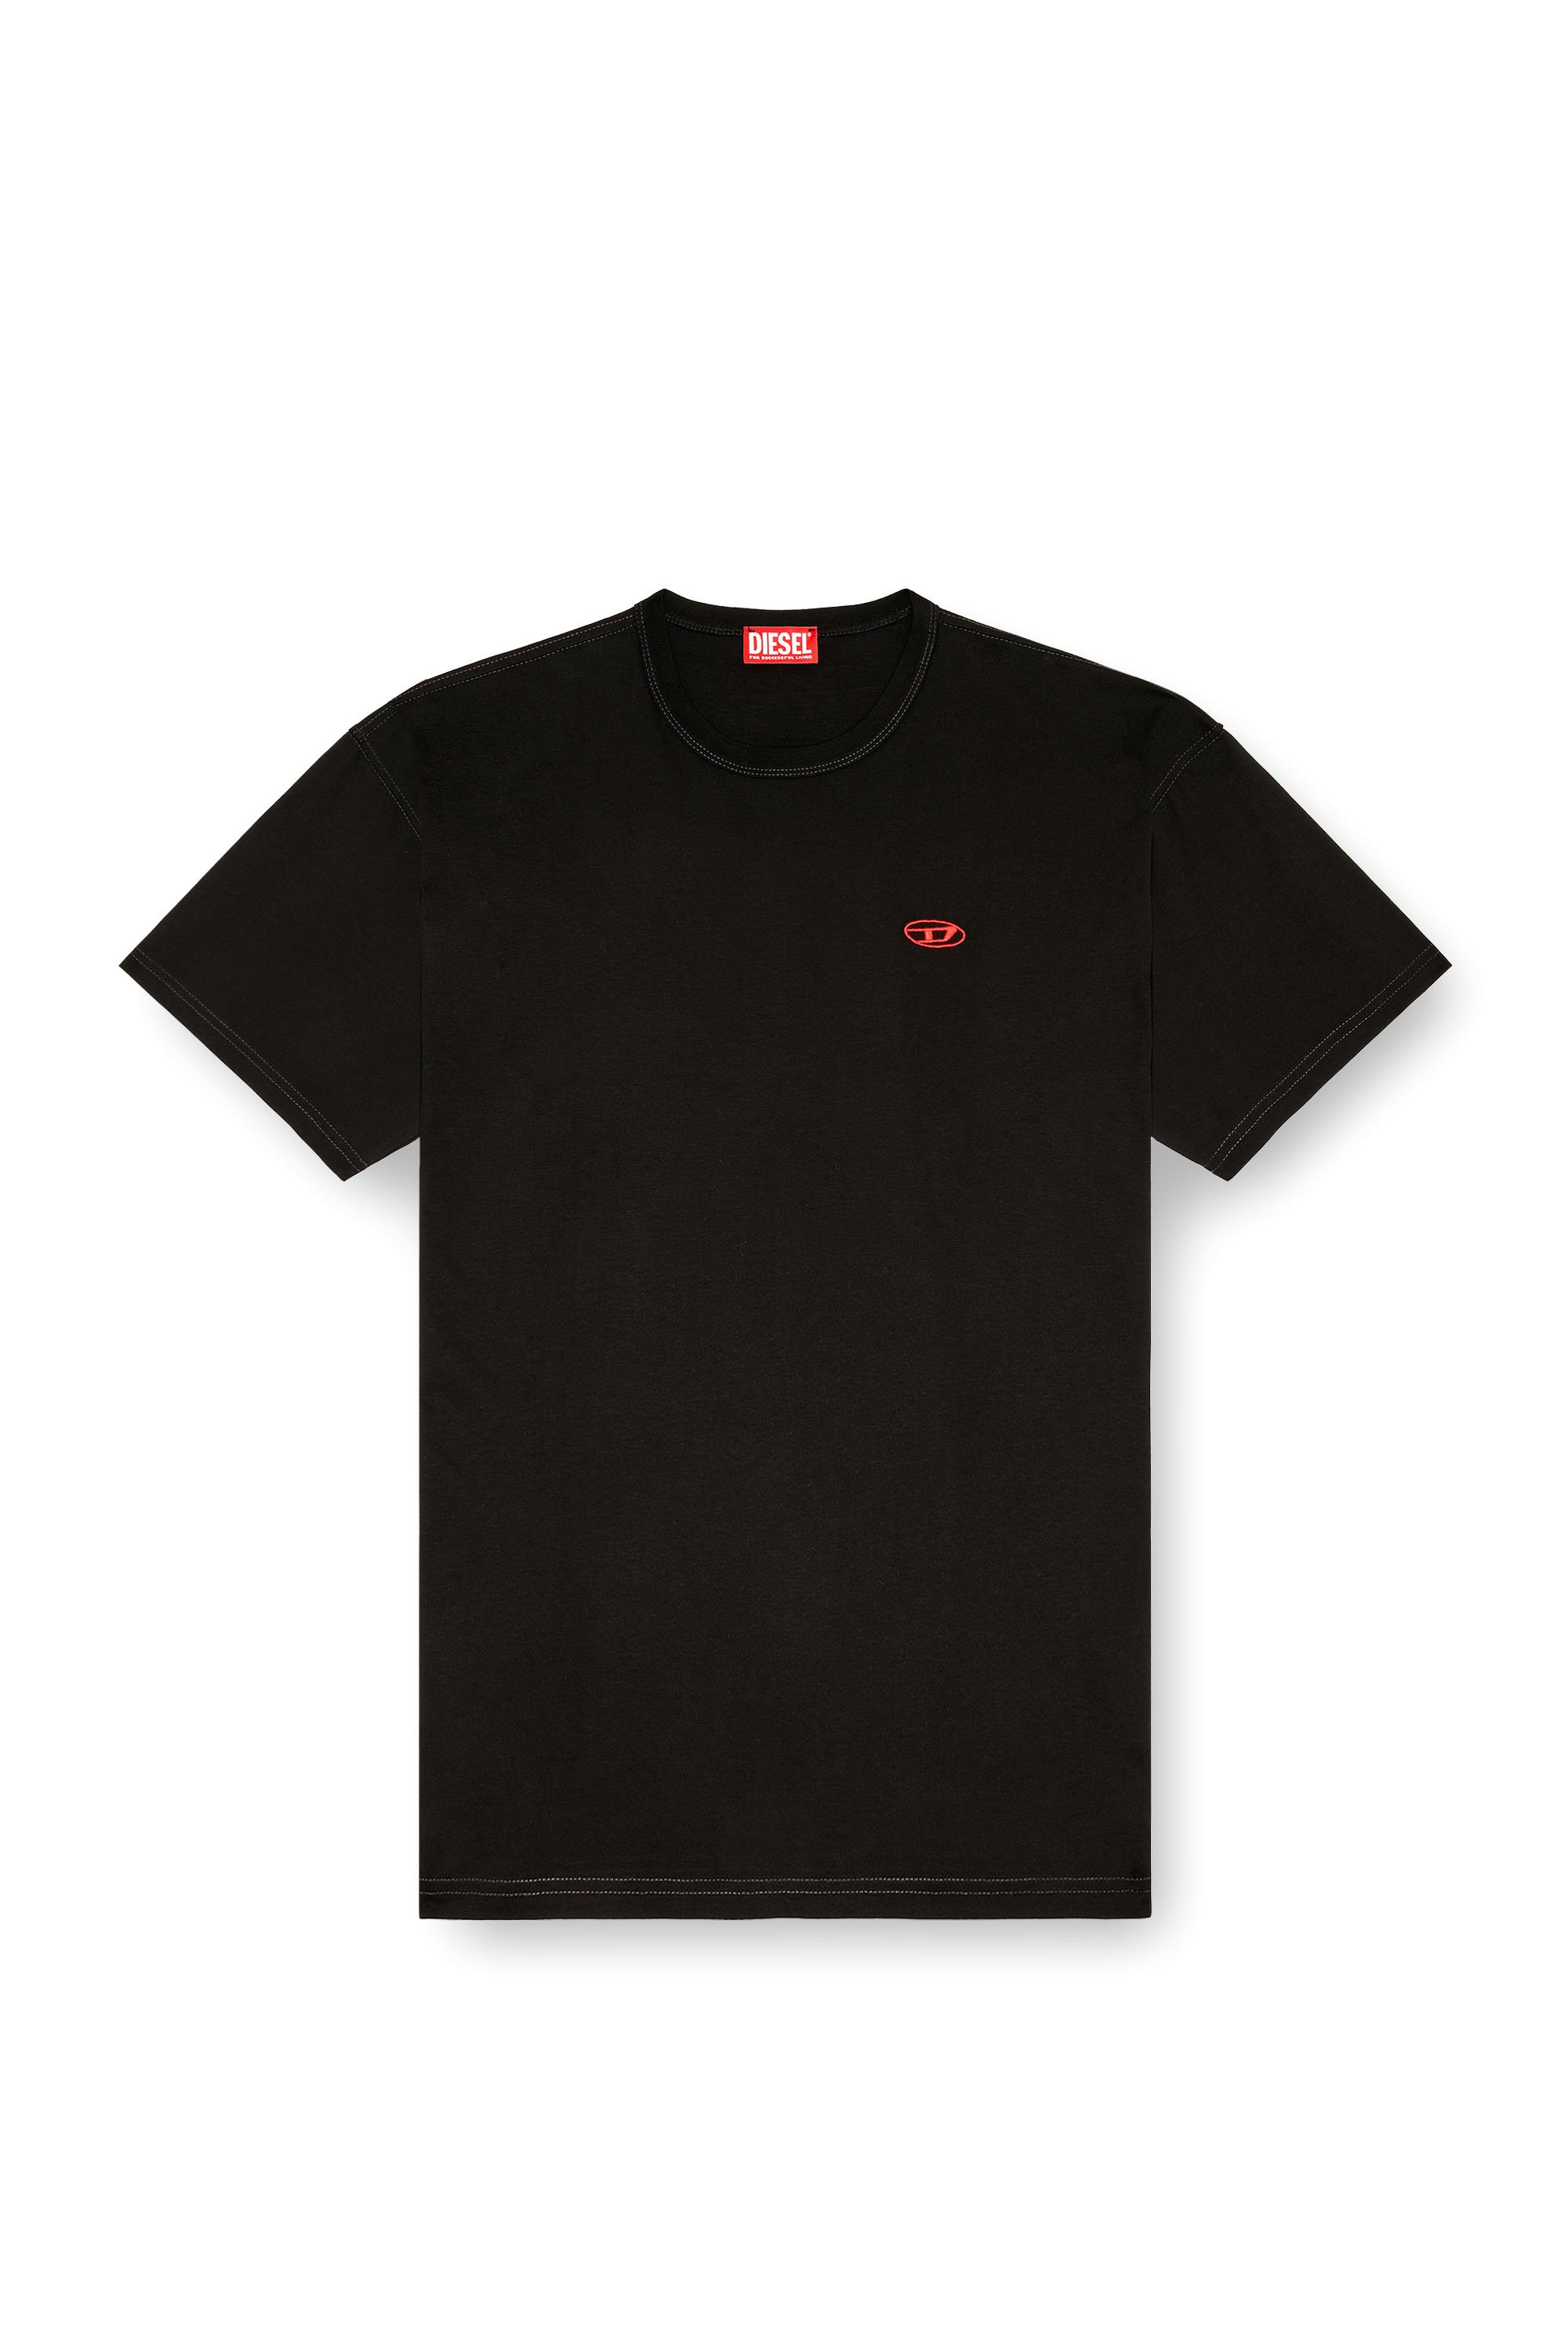 Diesel - T-BOXT-K18, Homme T-shirt avec imprimé Oval D et broderie in Noir - Image 3